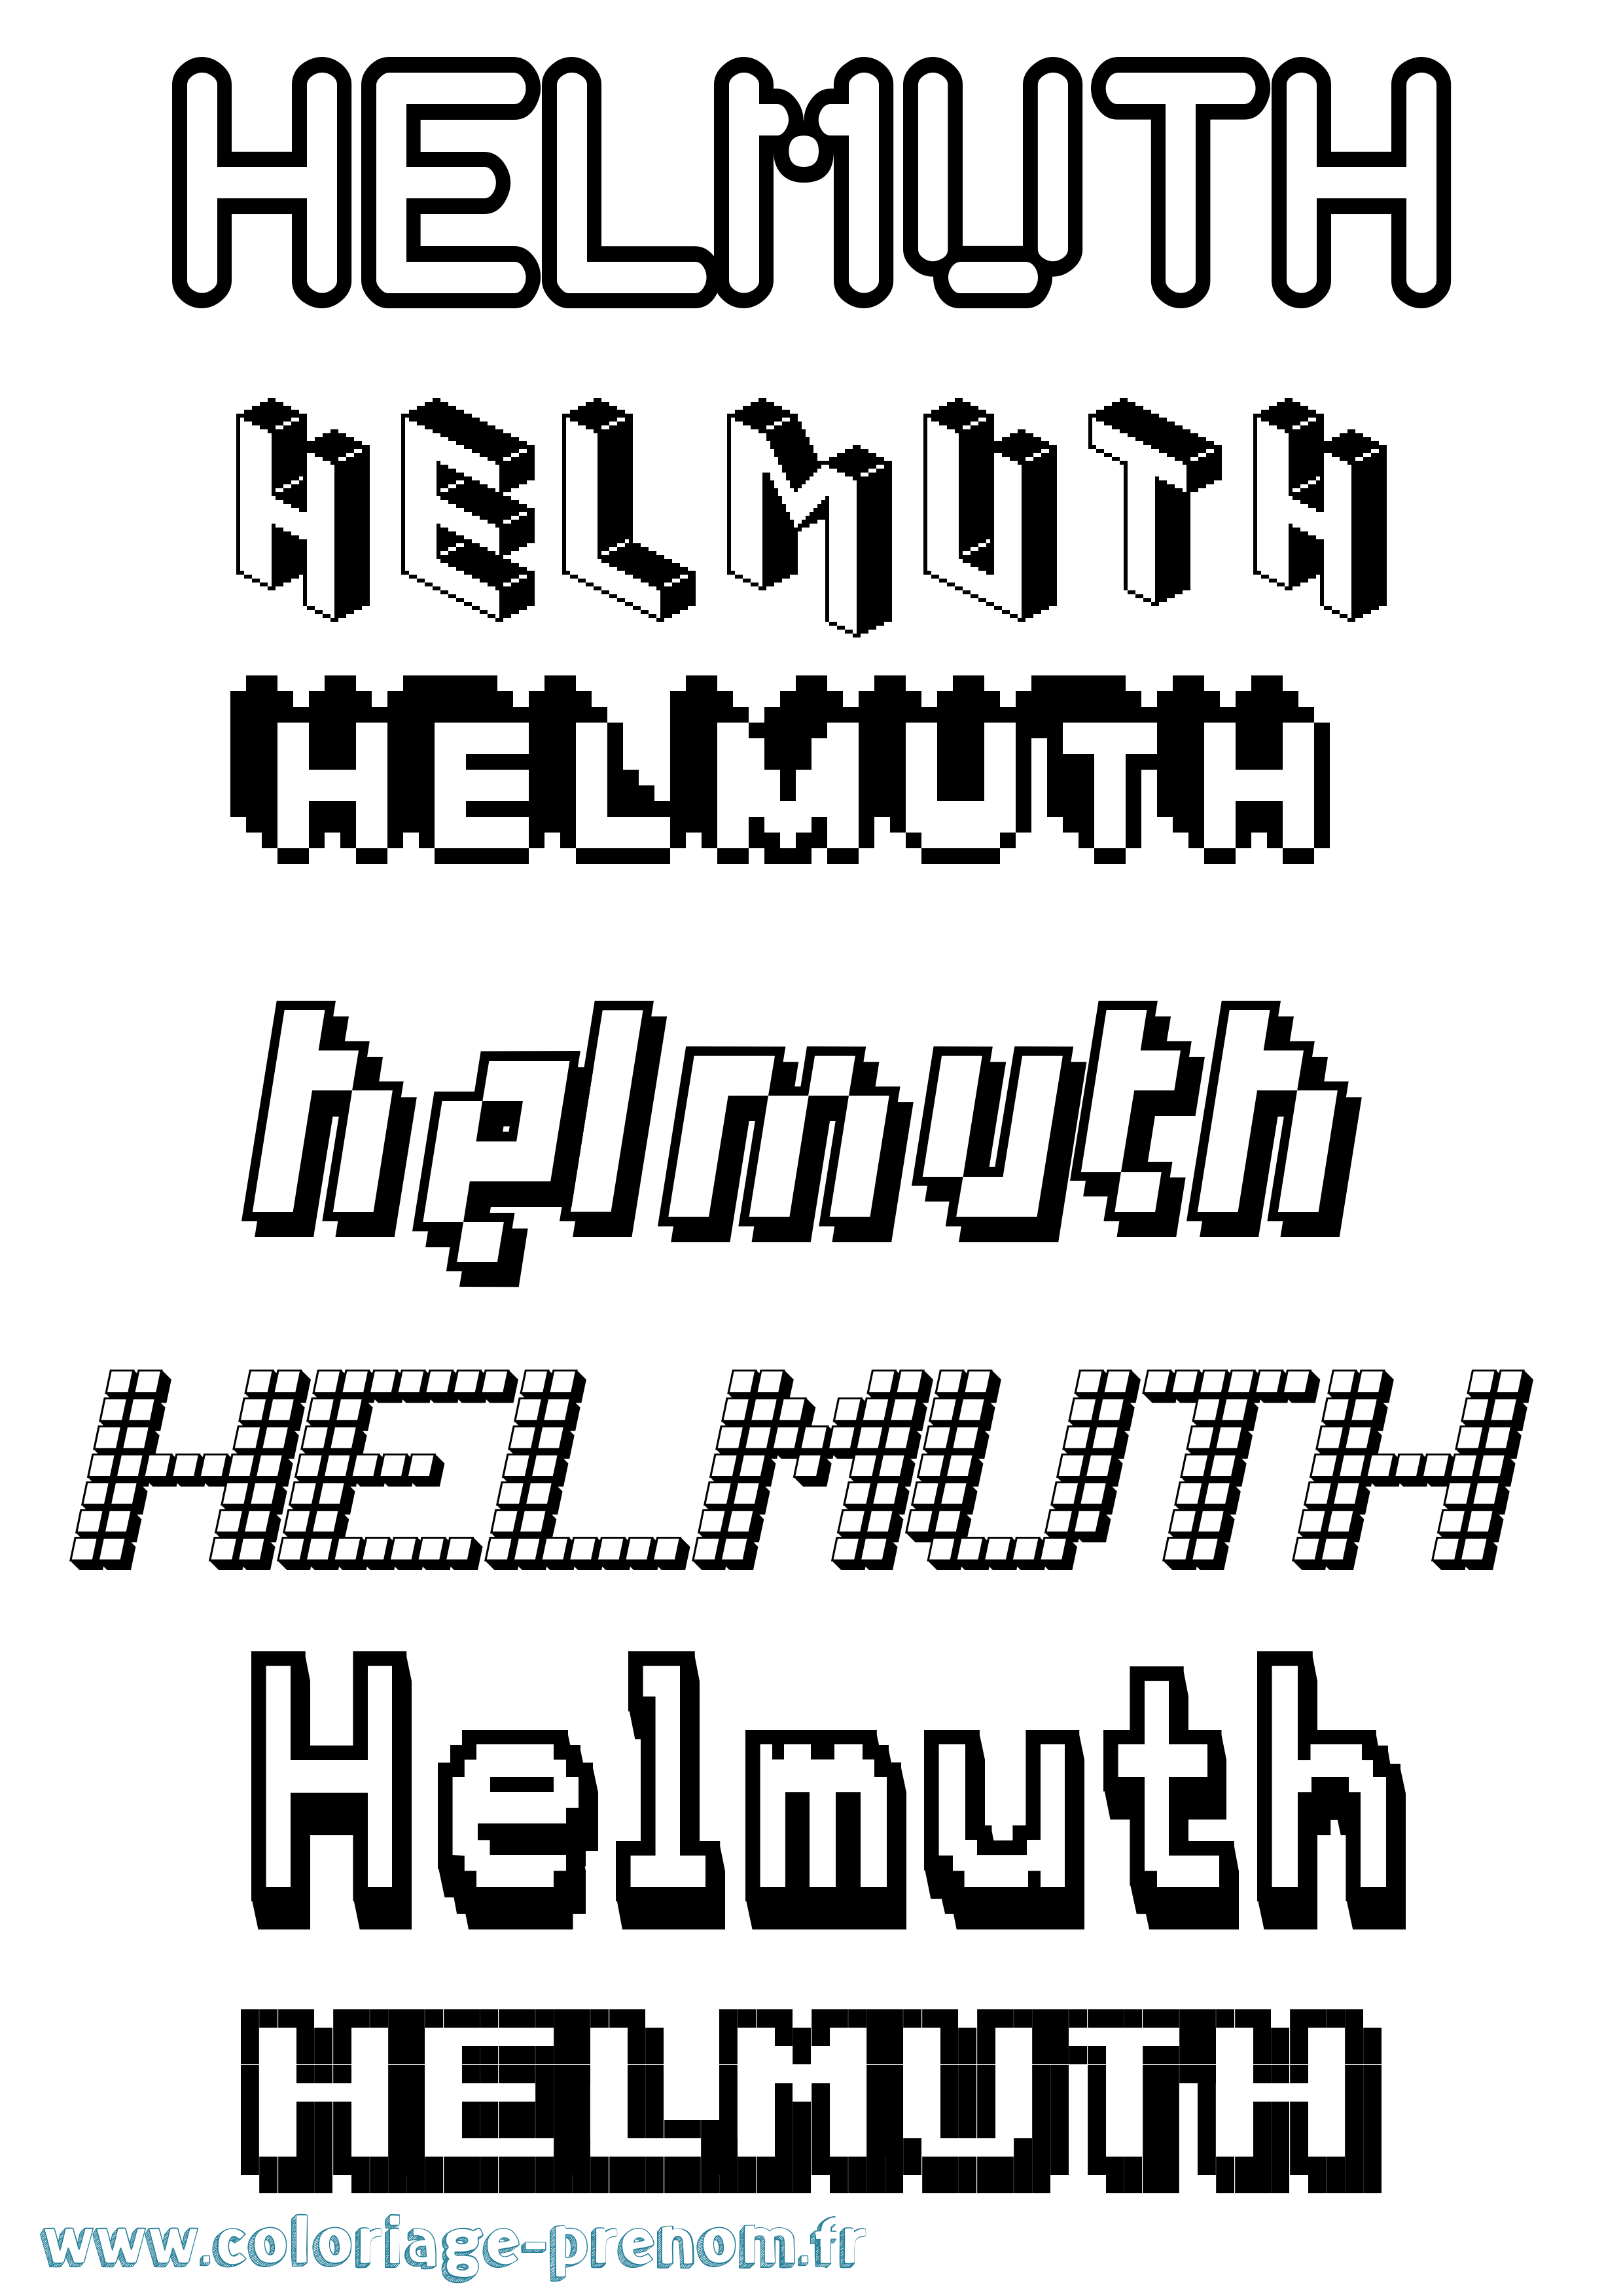 Coloriage prénom Helmuth Pixel